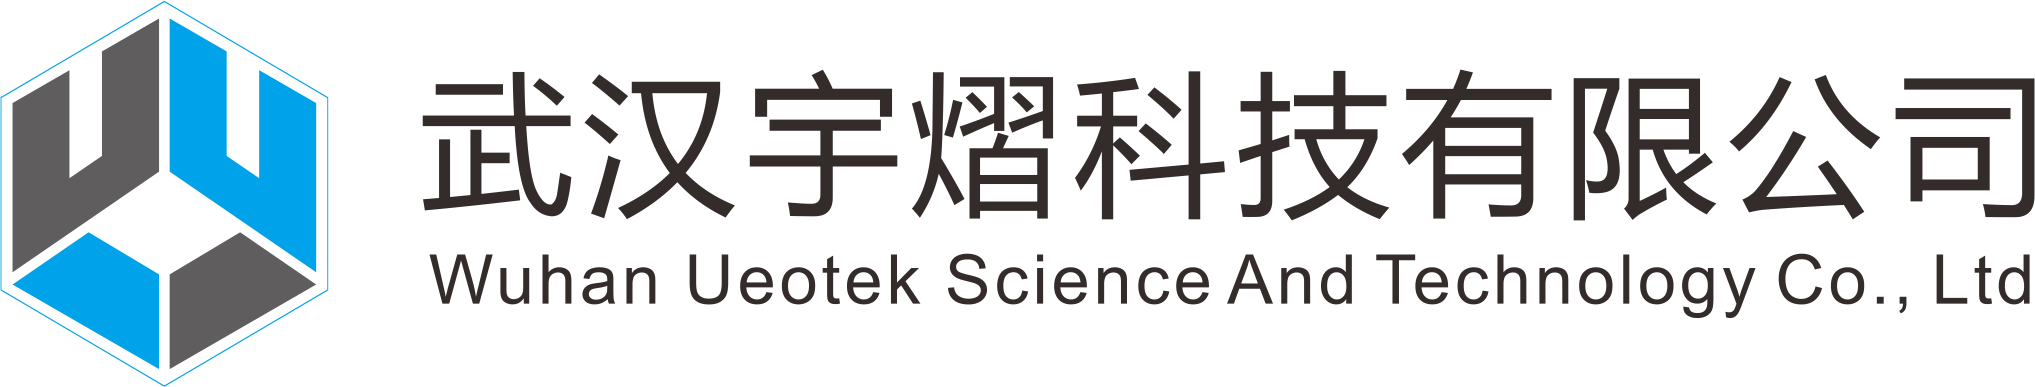 宇熠科技logo